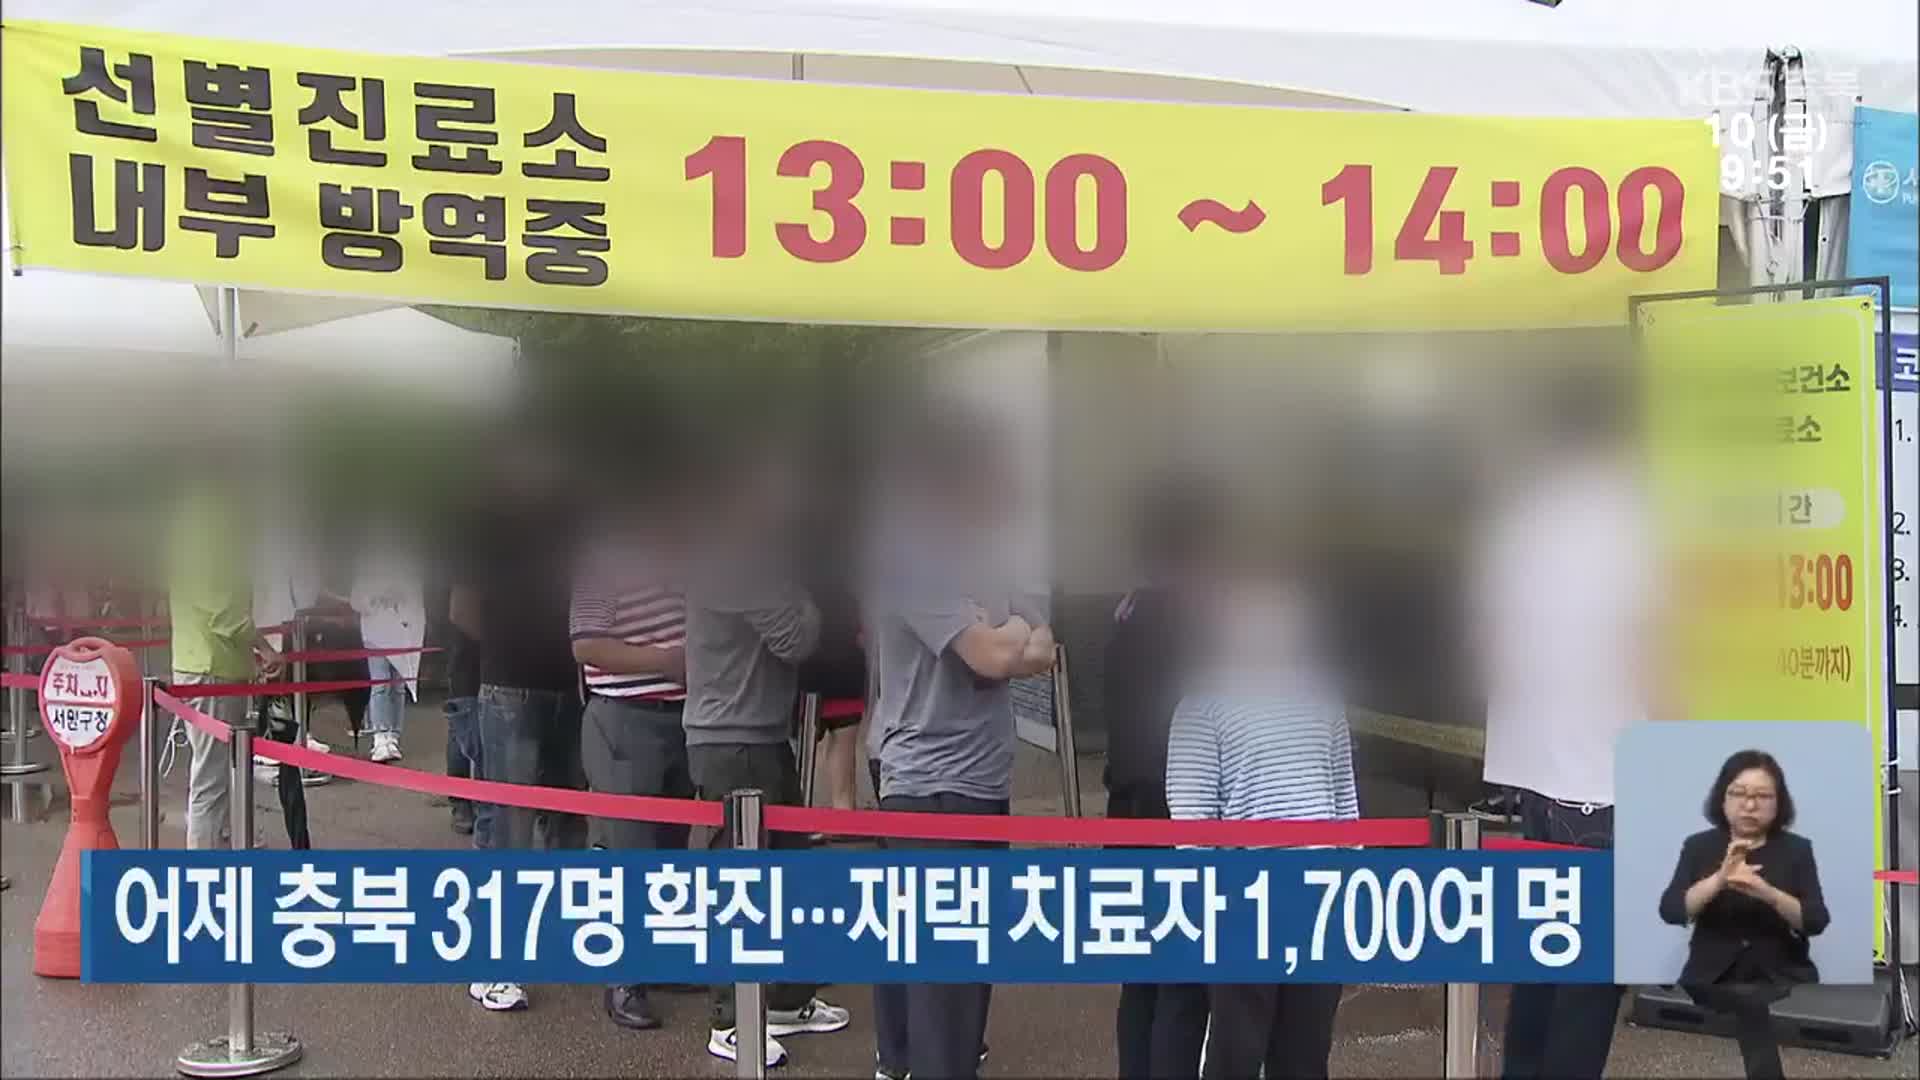 어제 충북 317명 확진…재택 치료자 1,700여 명